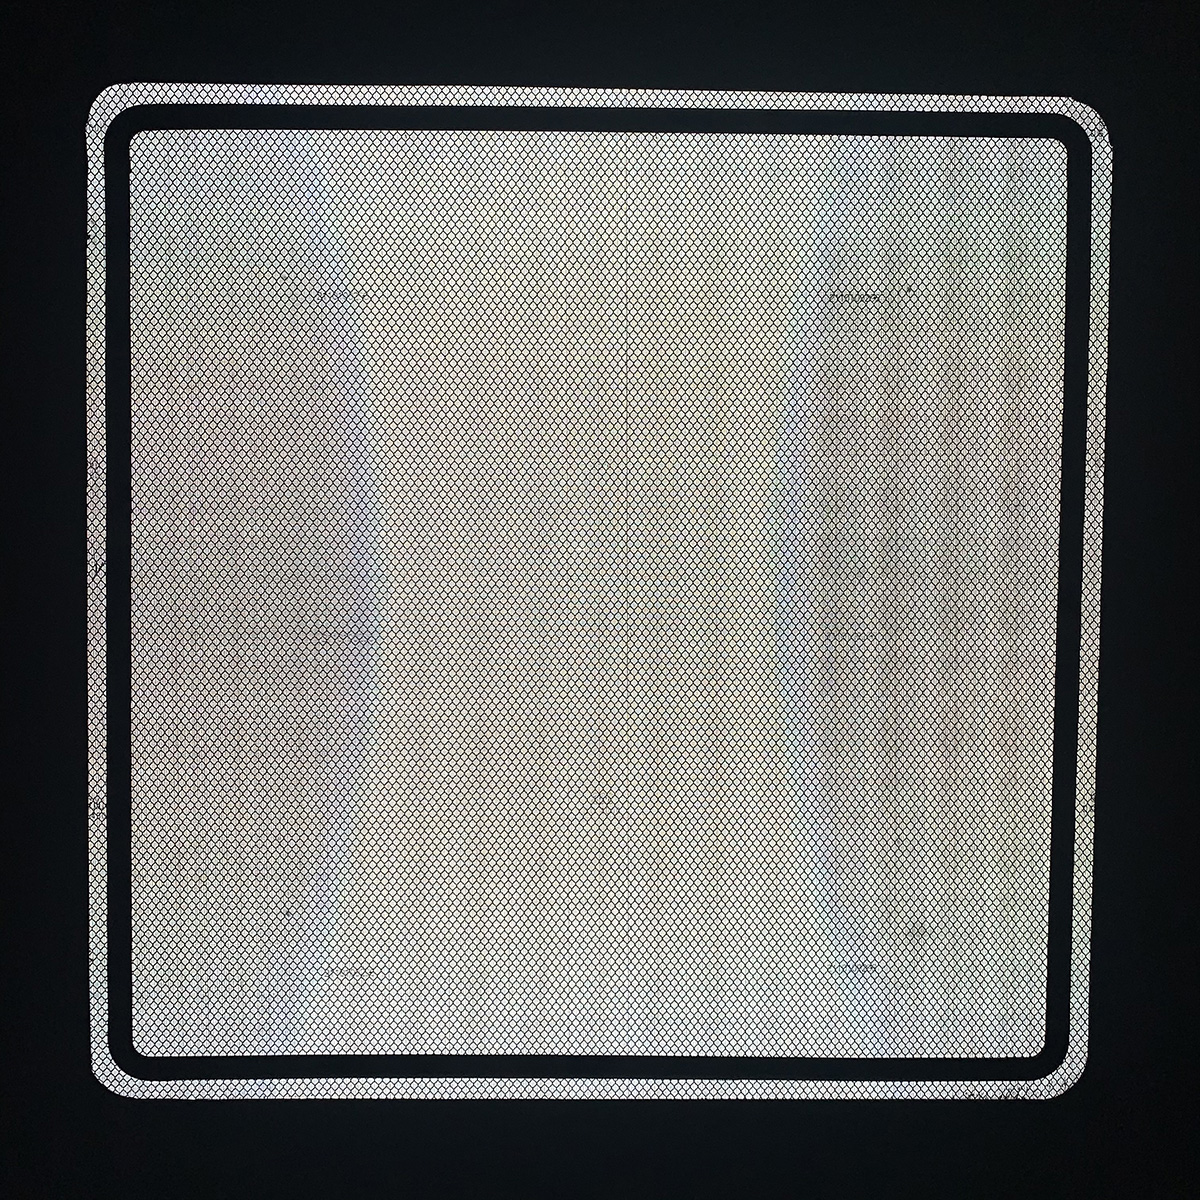 Placa de aluminio reflectante de señal de tráfico personalizada de 60x60 cm